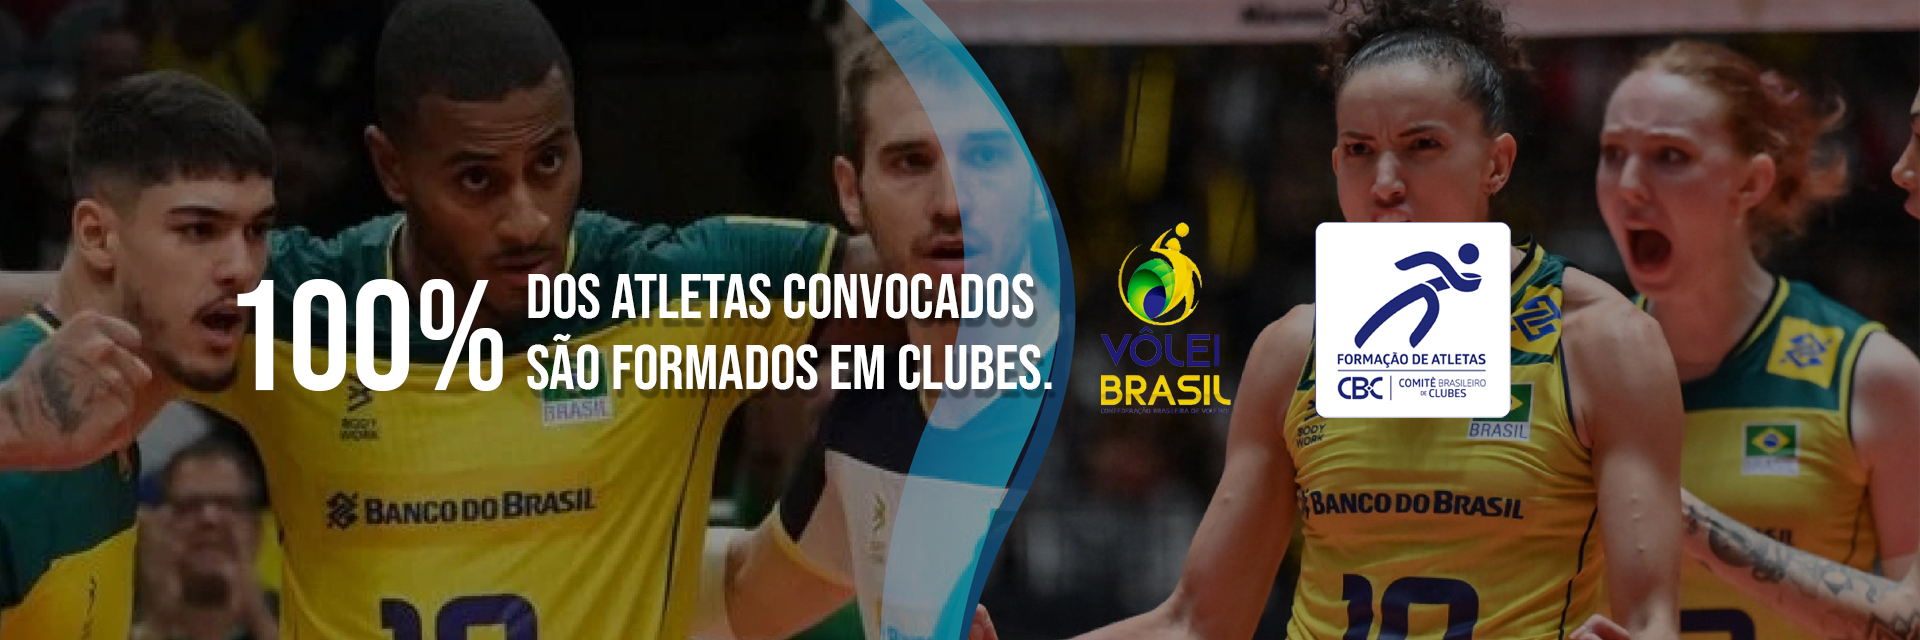 Voleibol brasileiro vai à Paris com 100% de atletas formados em Clubes